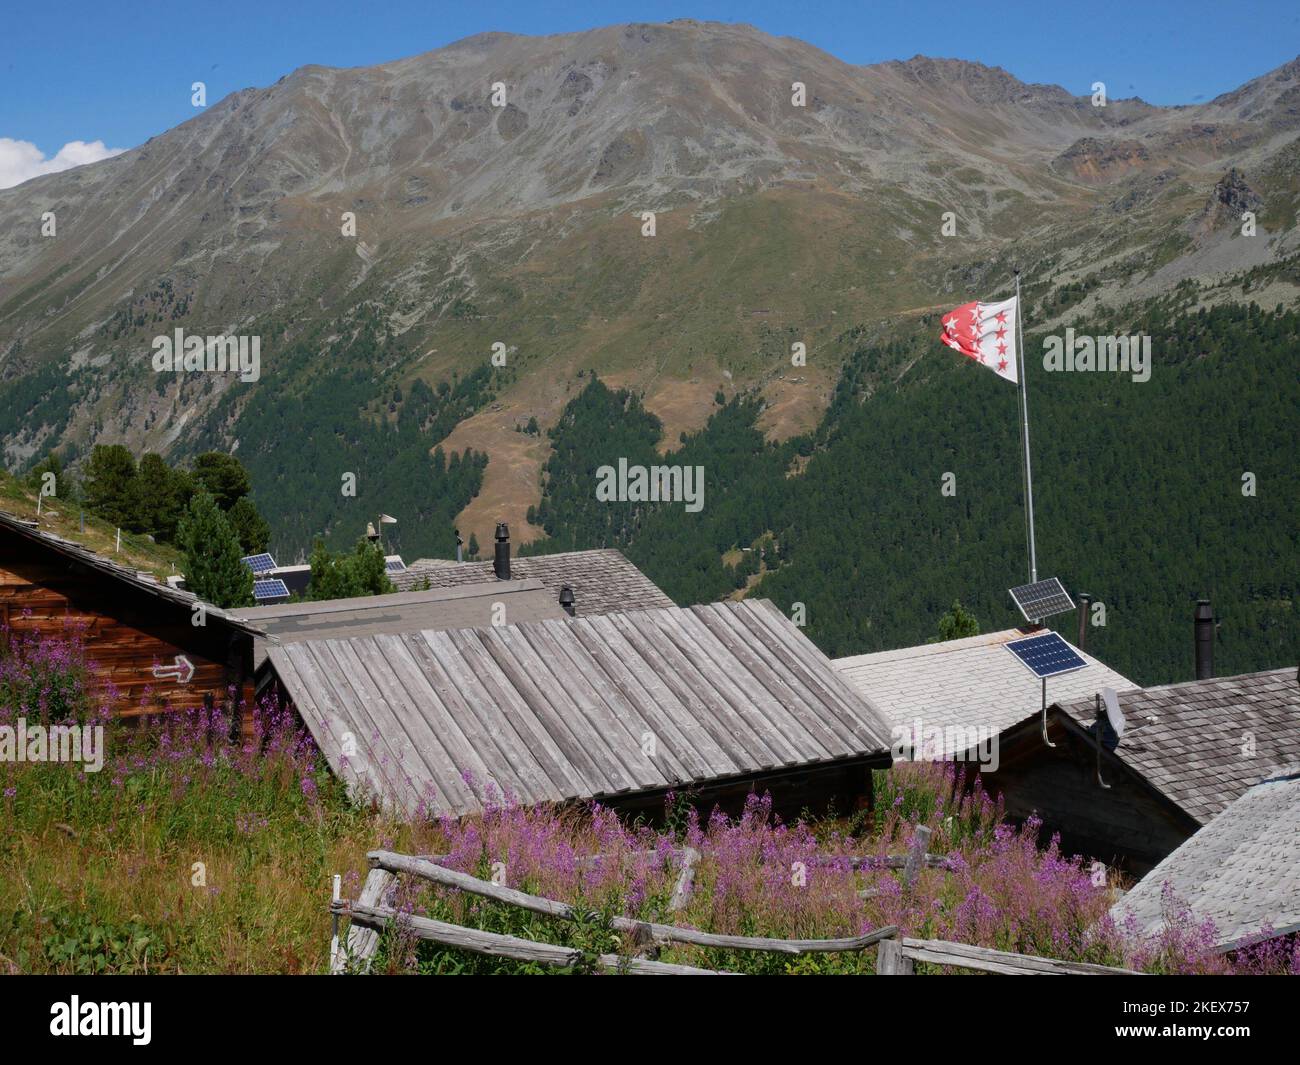 Images de paysages et fleurs sauvages de montagne prises en marchant sur la haute route des Walker dans les Alpes suisses Banque D'Images